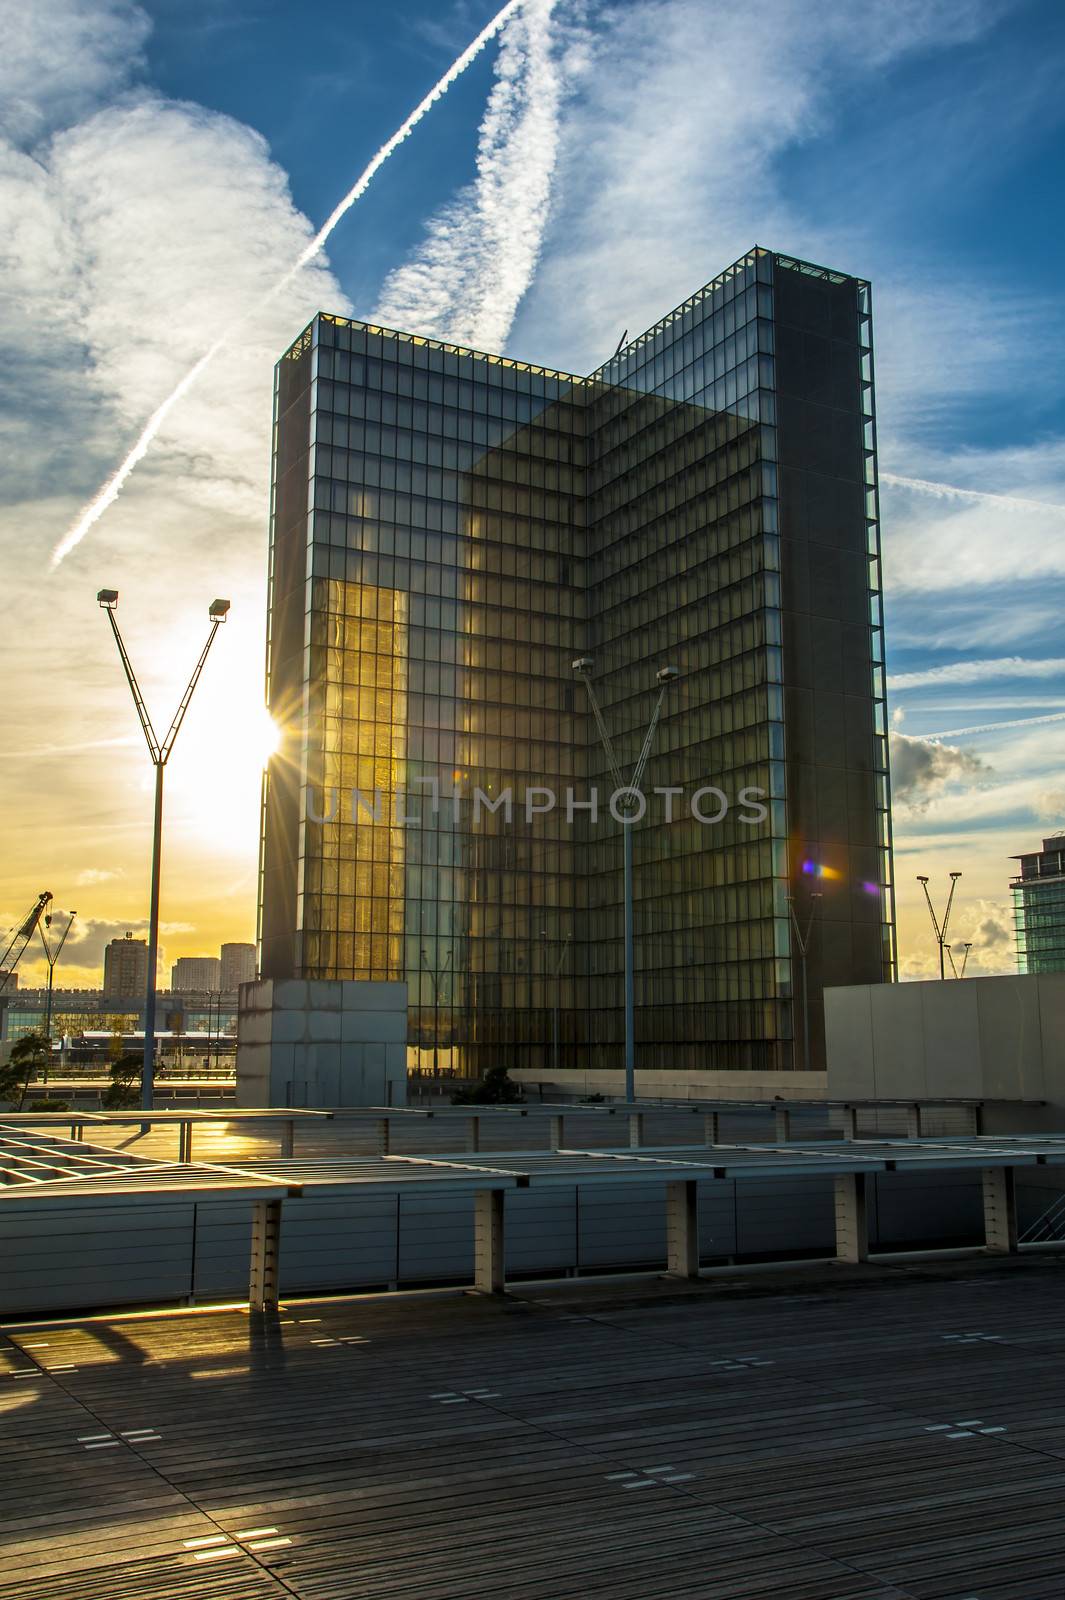 Skyscraper in a sunset in Paris by cla78